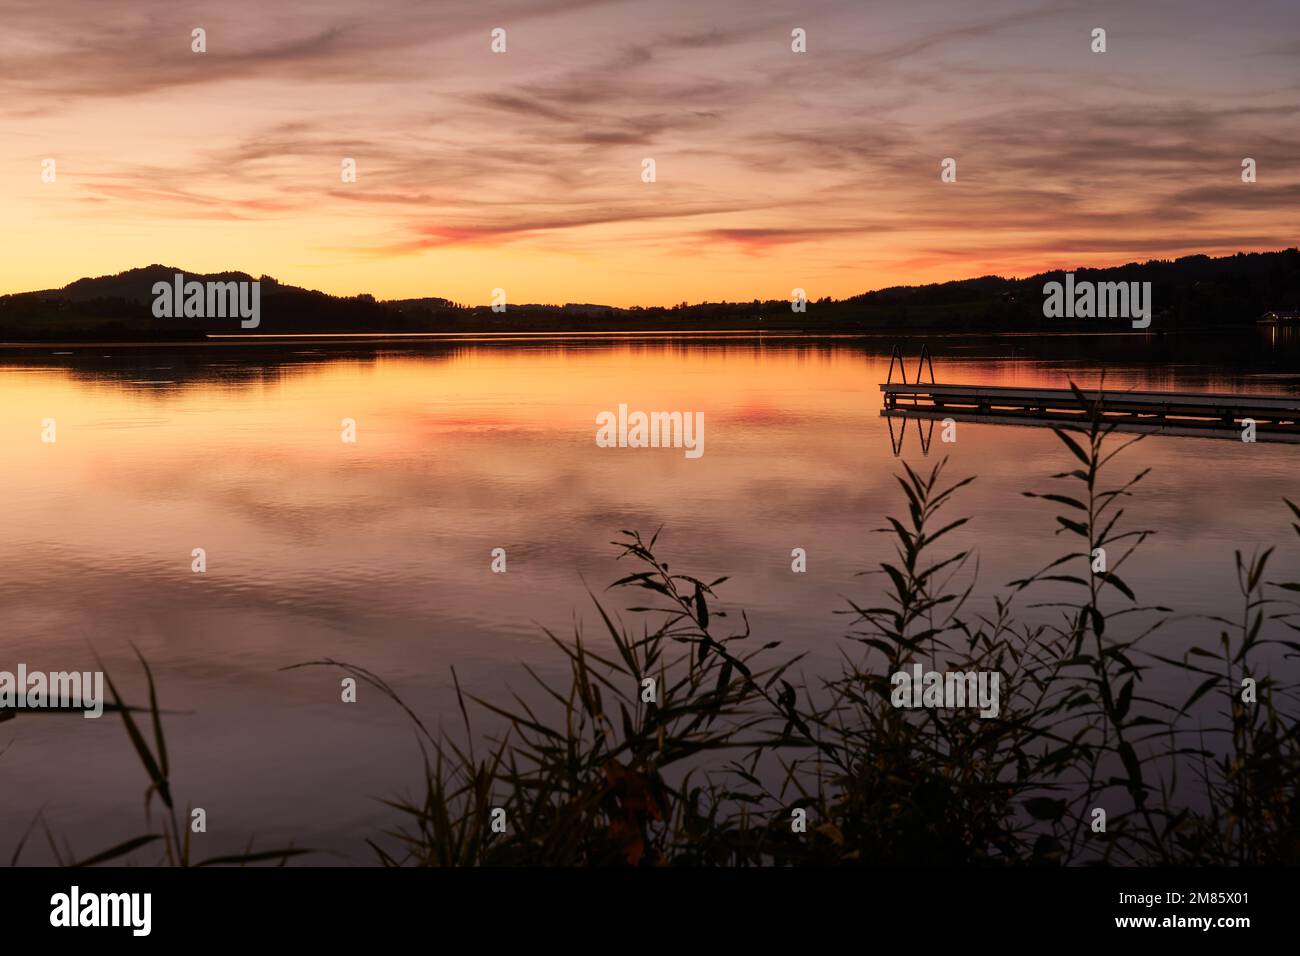 Wundervolle Abendstimmung am Hopfensee mit Steg und orangeroter Wolkenspiegelung im See Stock Photo